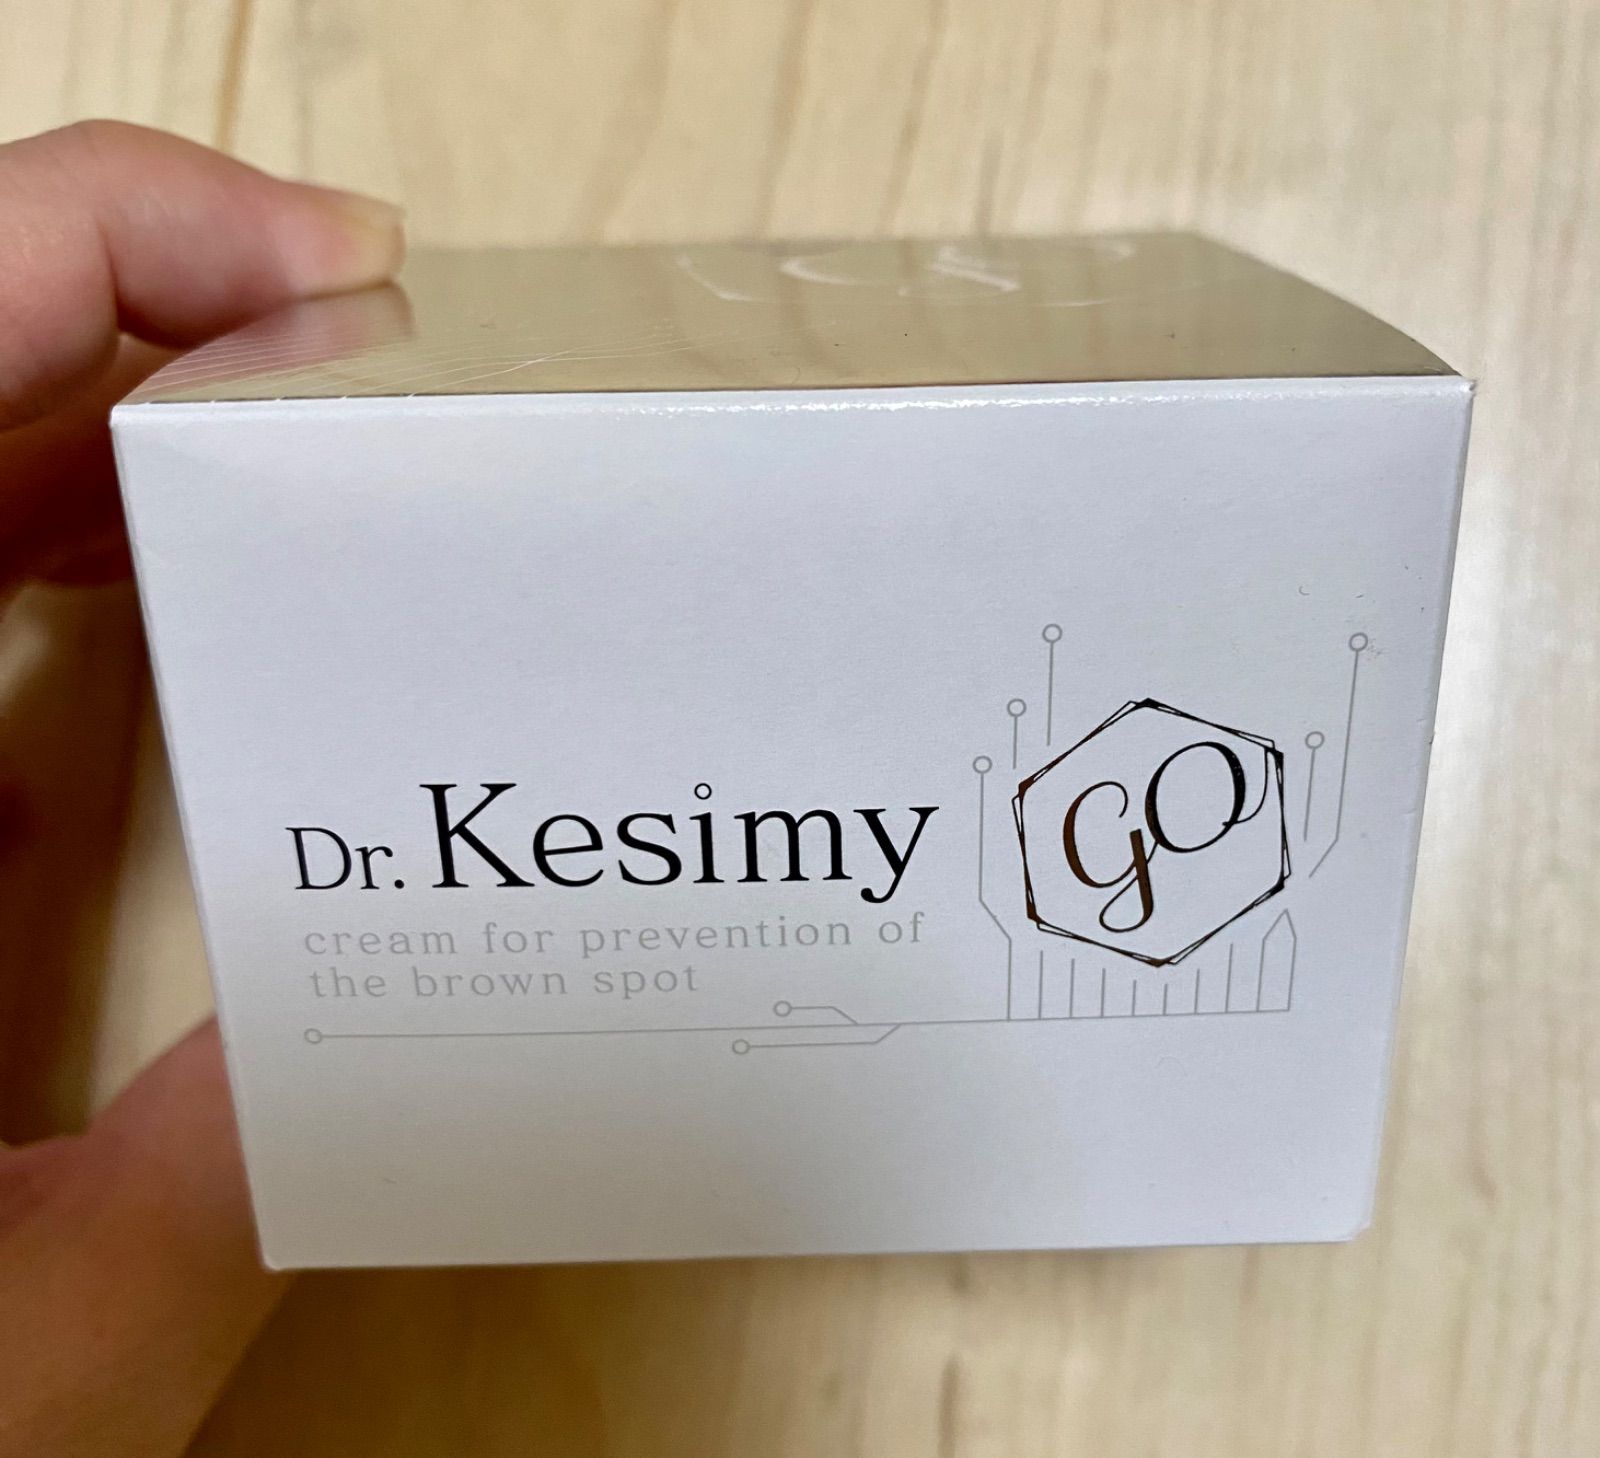 2個 ドクターケシミー Dr. kesimy go フェイスクリーム 60g - 通販